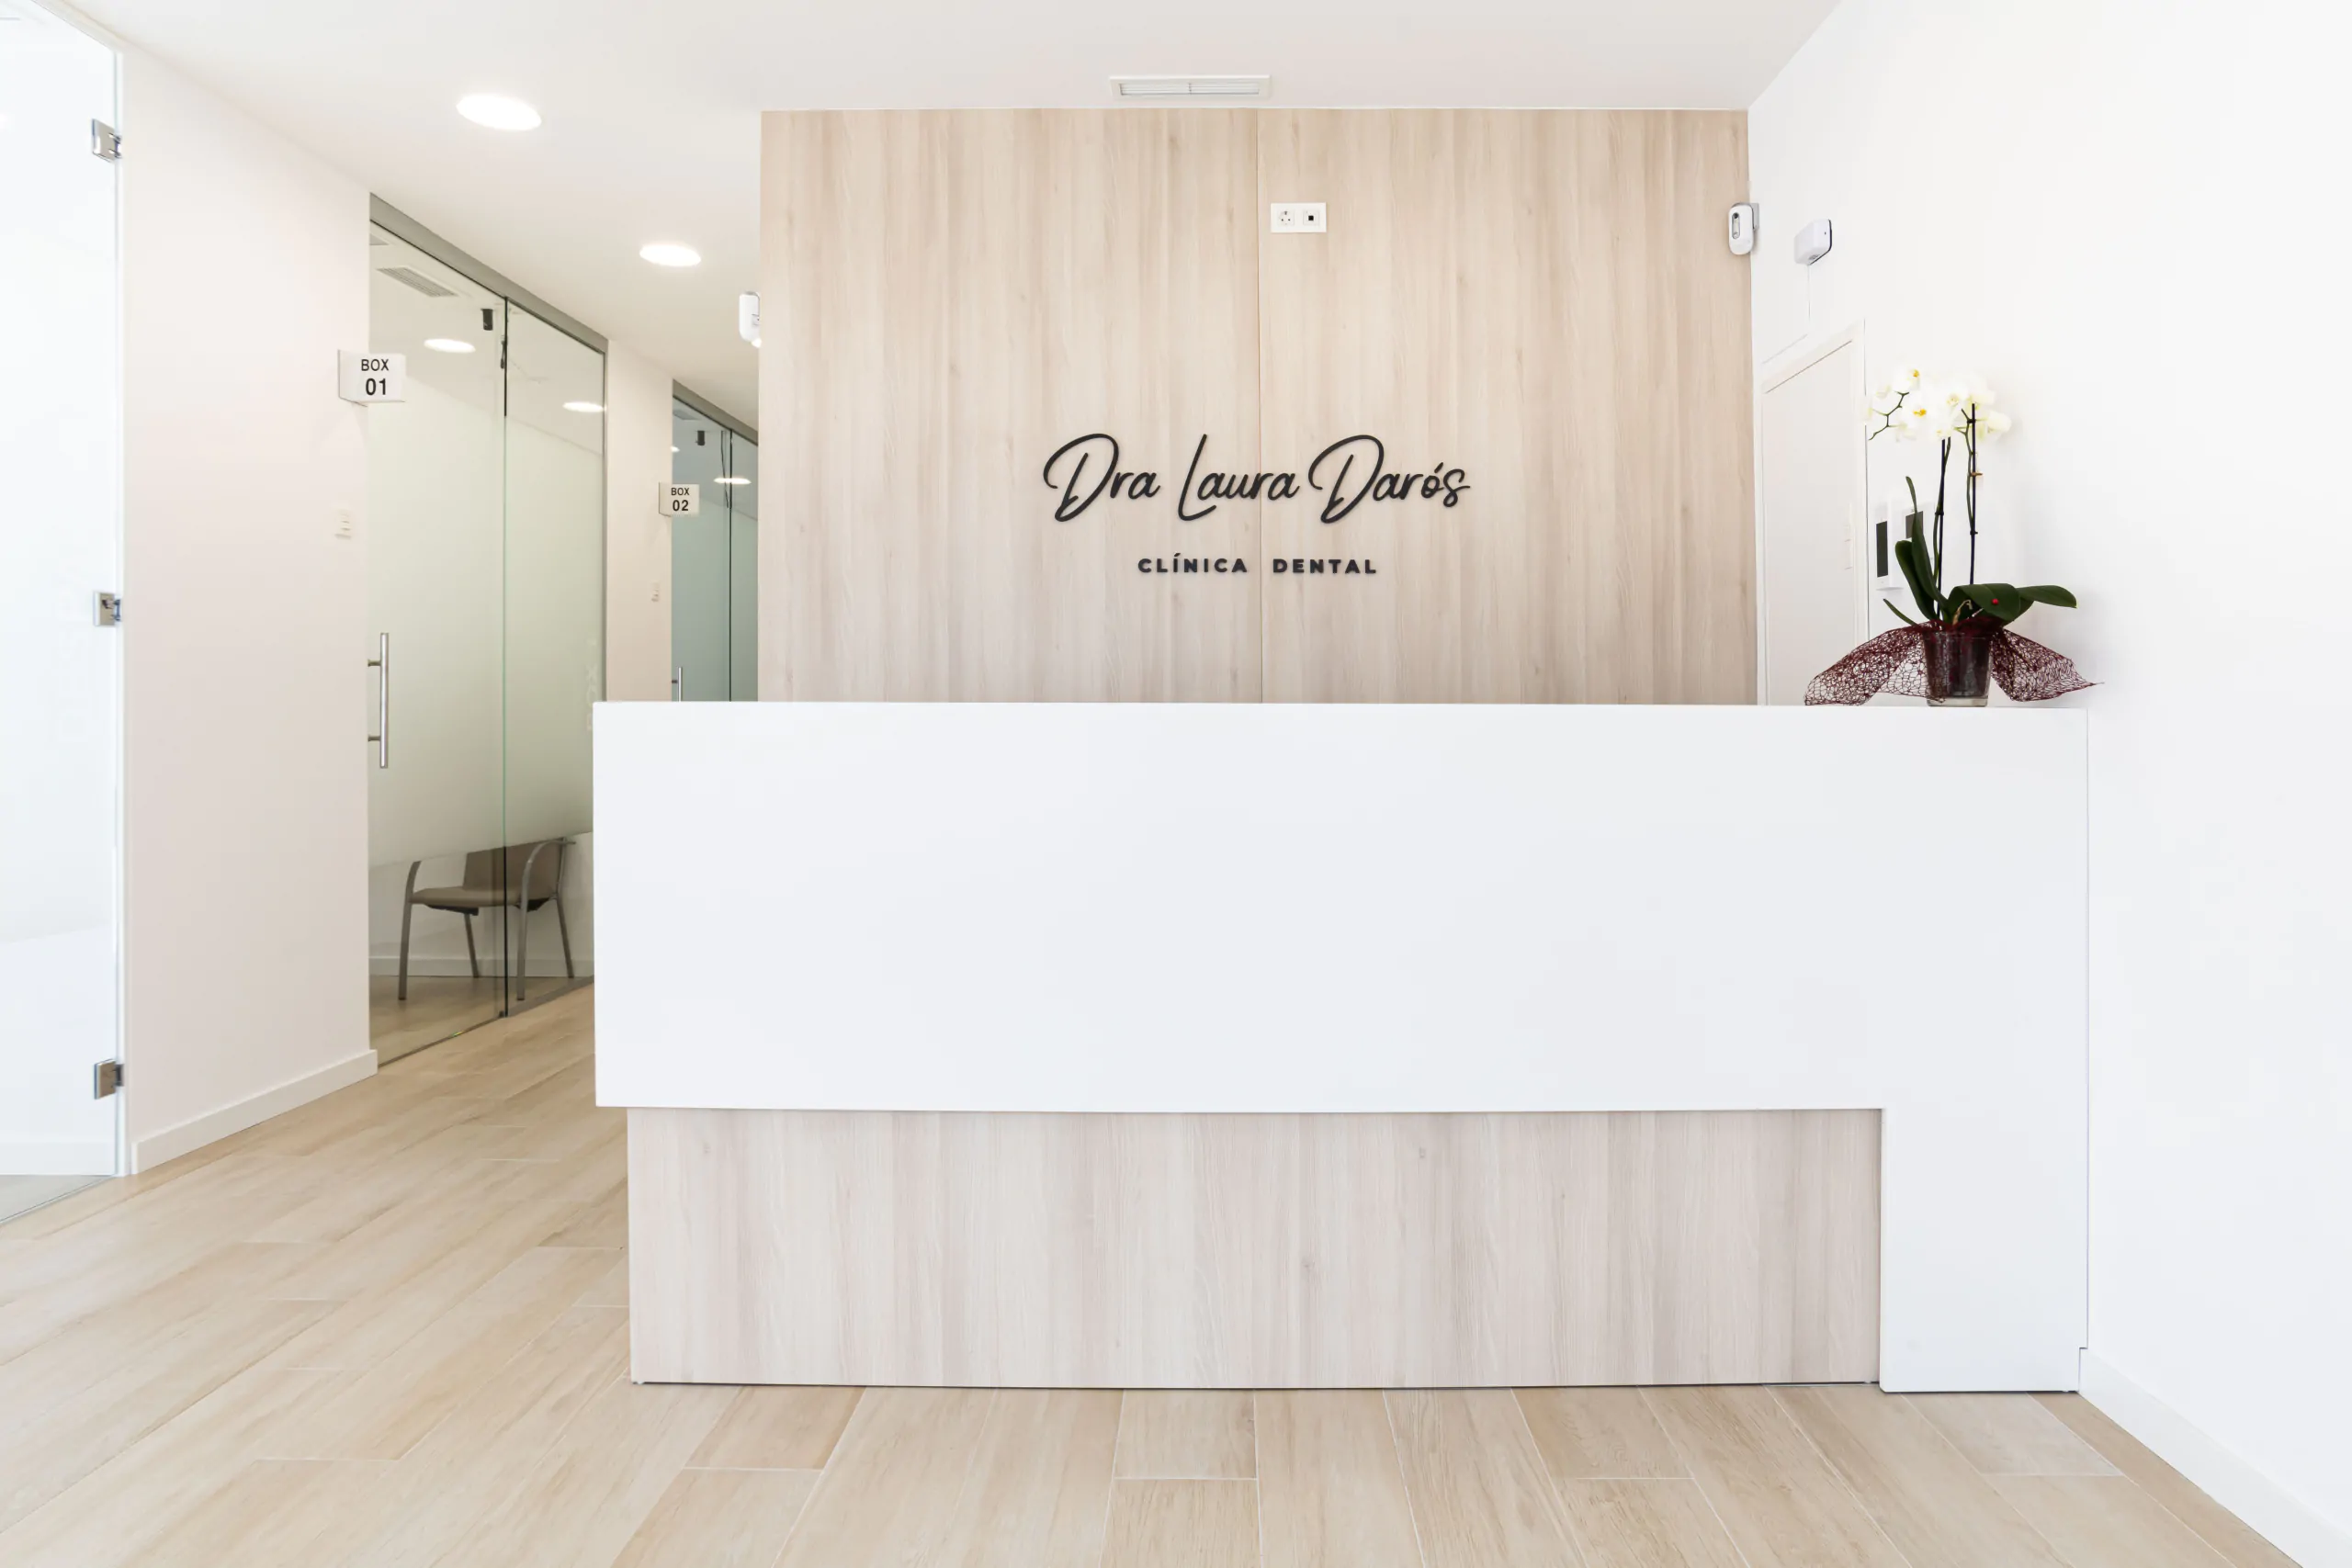 Sala de recepcion con acabados blancos y de madera con el nombre ¨Dra Laura Daros¨